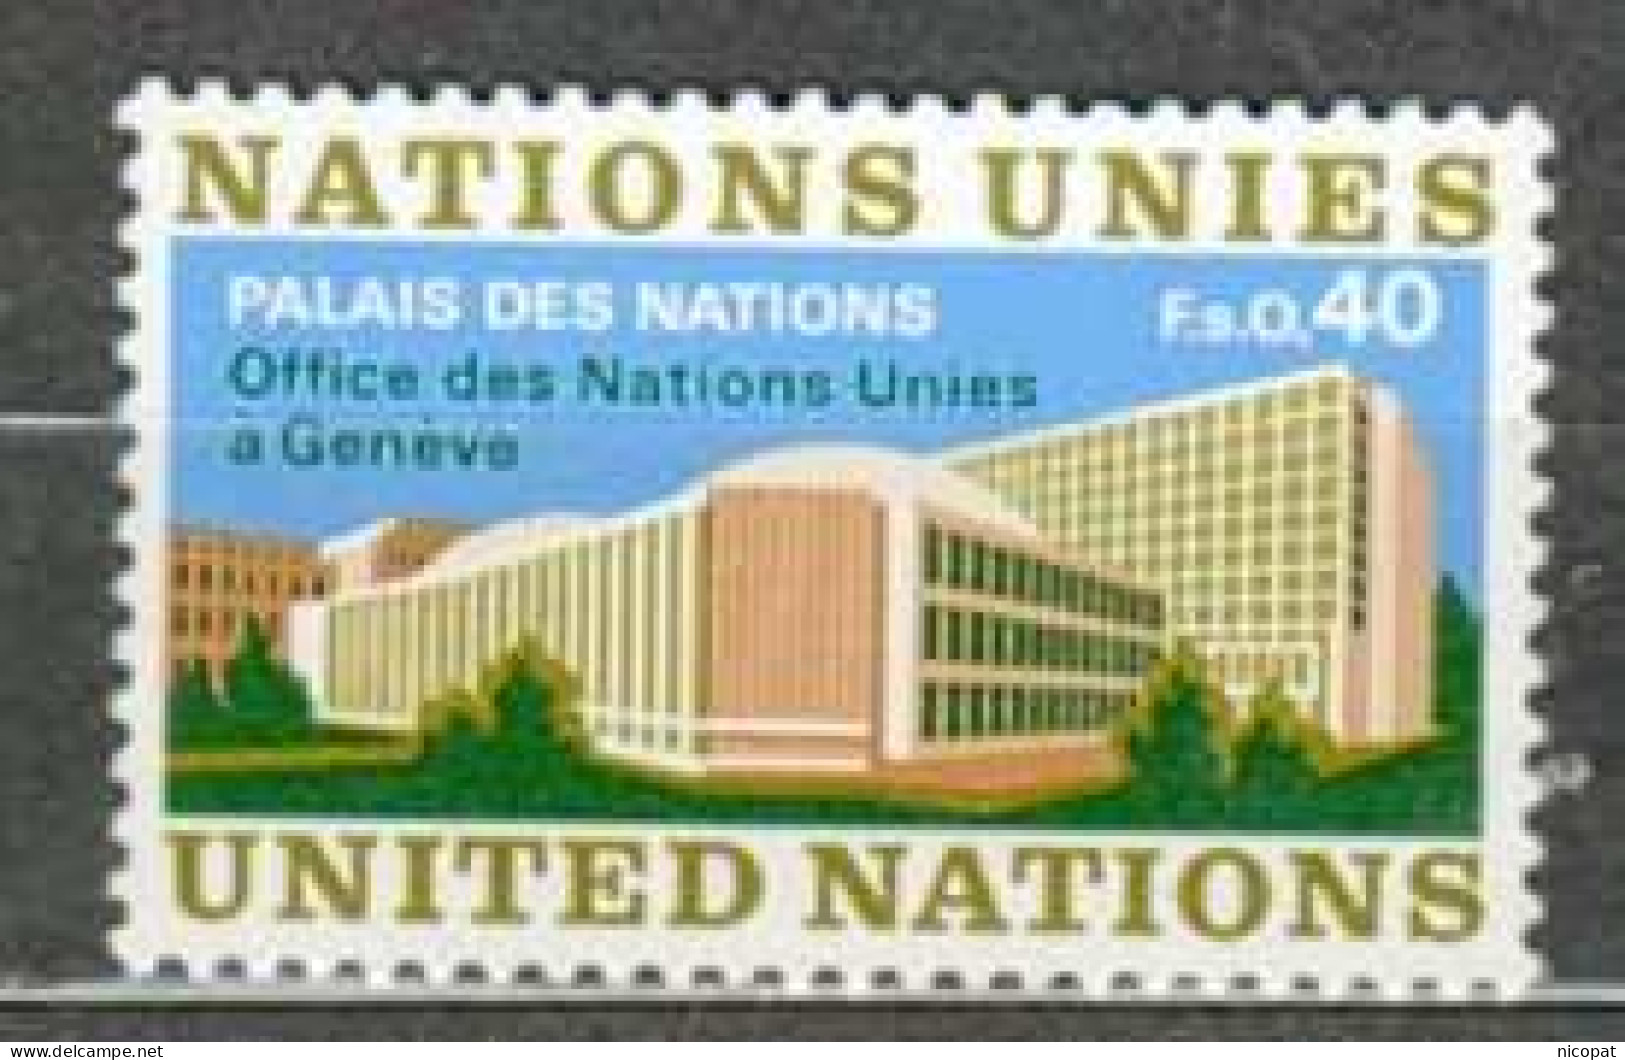 ONU GENEVE MNH ** 22 Palais Des Nations à Genève Suisse - Unused Stamps